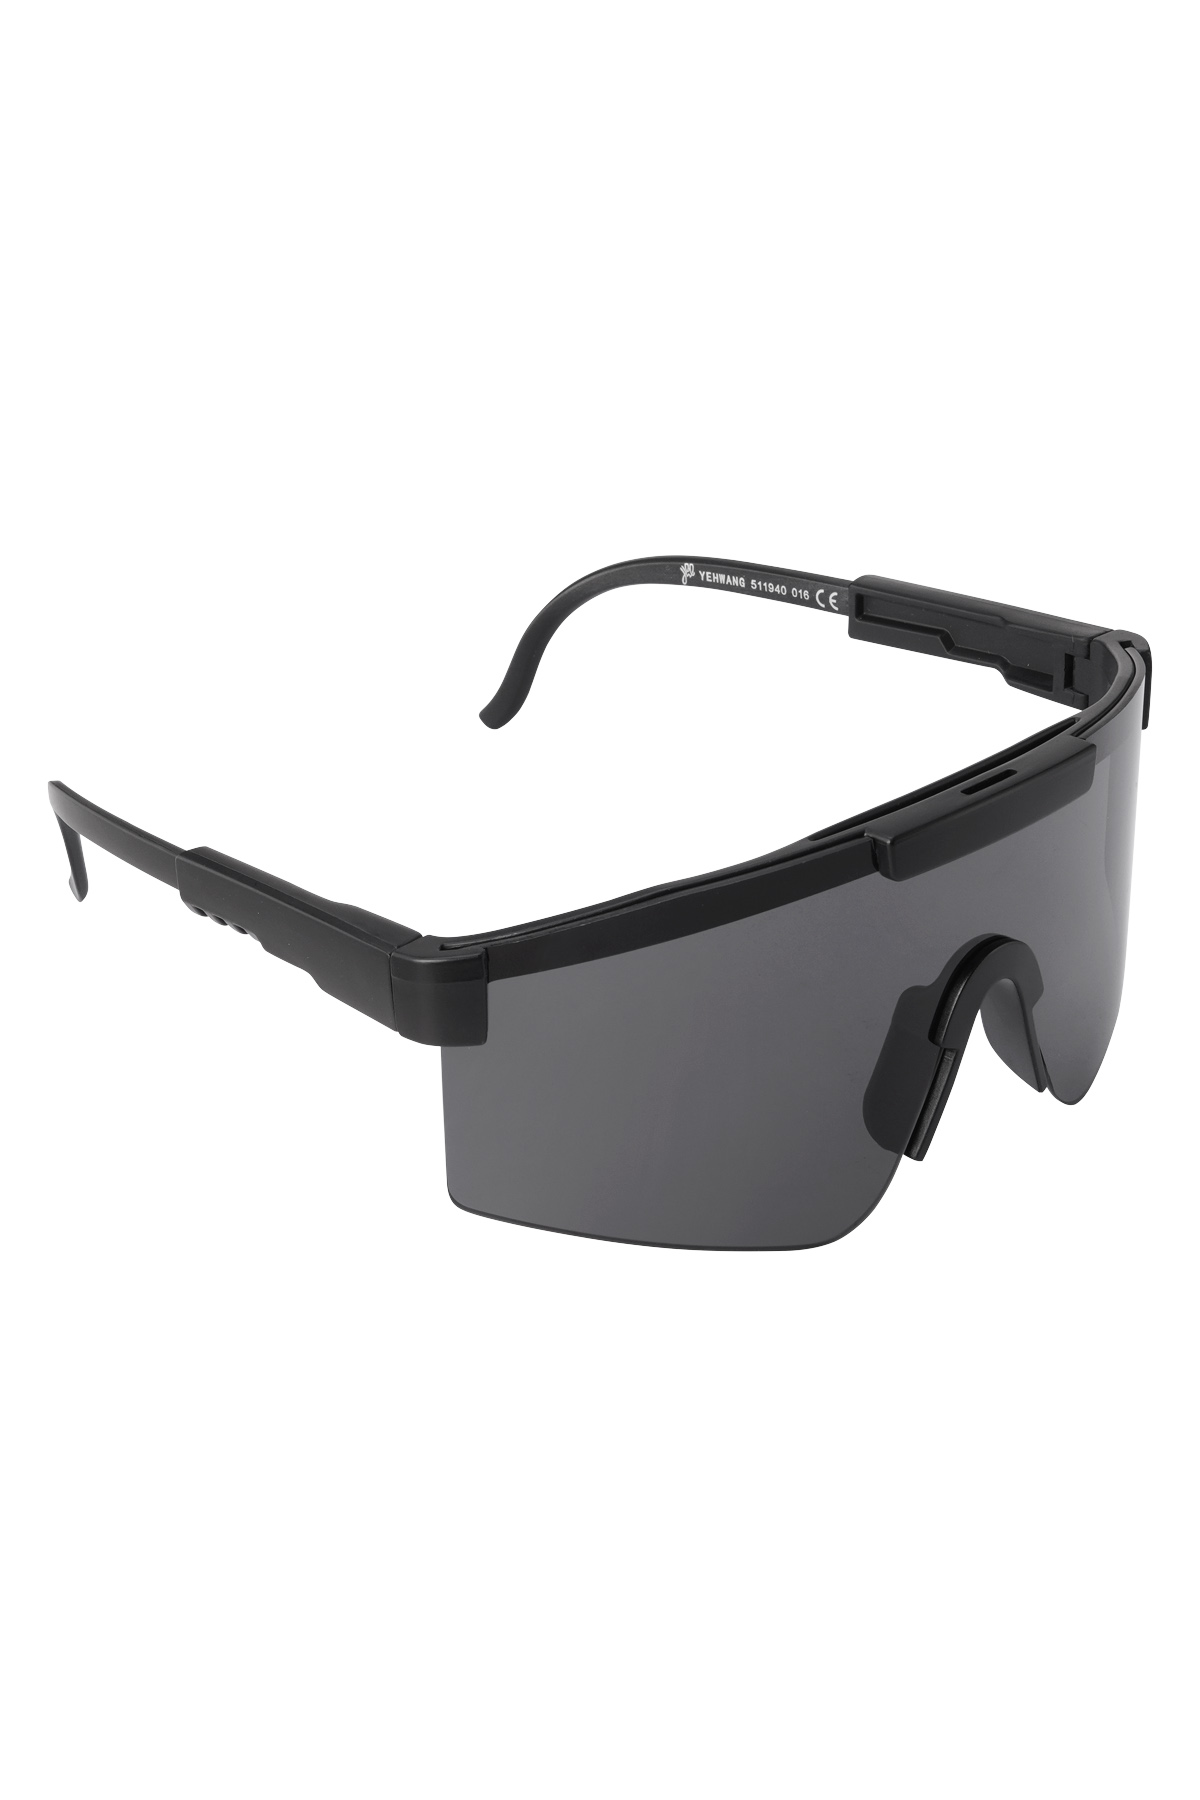 Sonnenbrille mit schwarzen Gläsern – schwarz